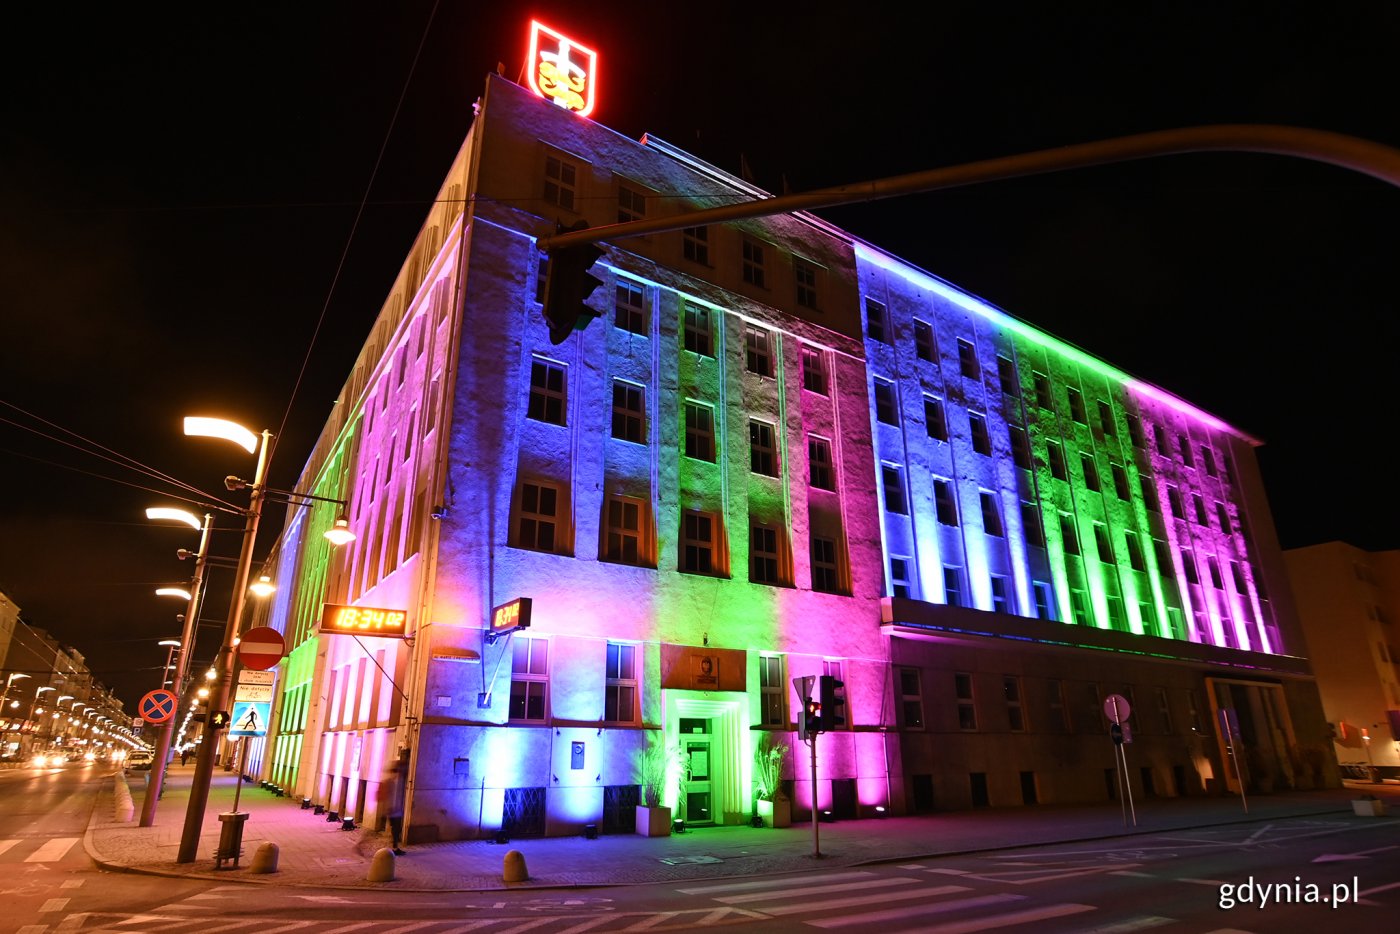 Róg budynku Urzędu Miasta Gdynia przy Świętojańskiej i alei Piłsudskiego. Elewacja podświetlona na kolory: niebieski, różowy i zielony.